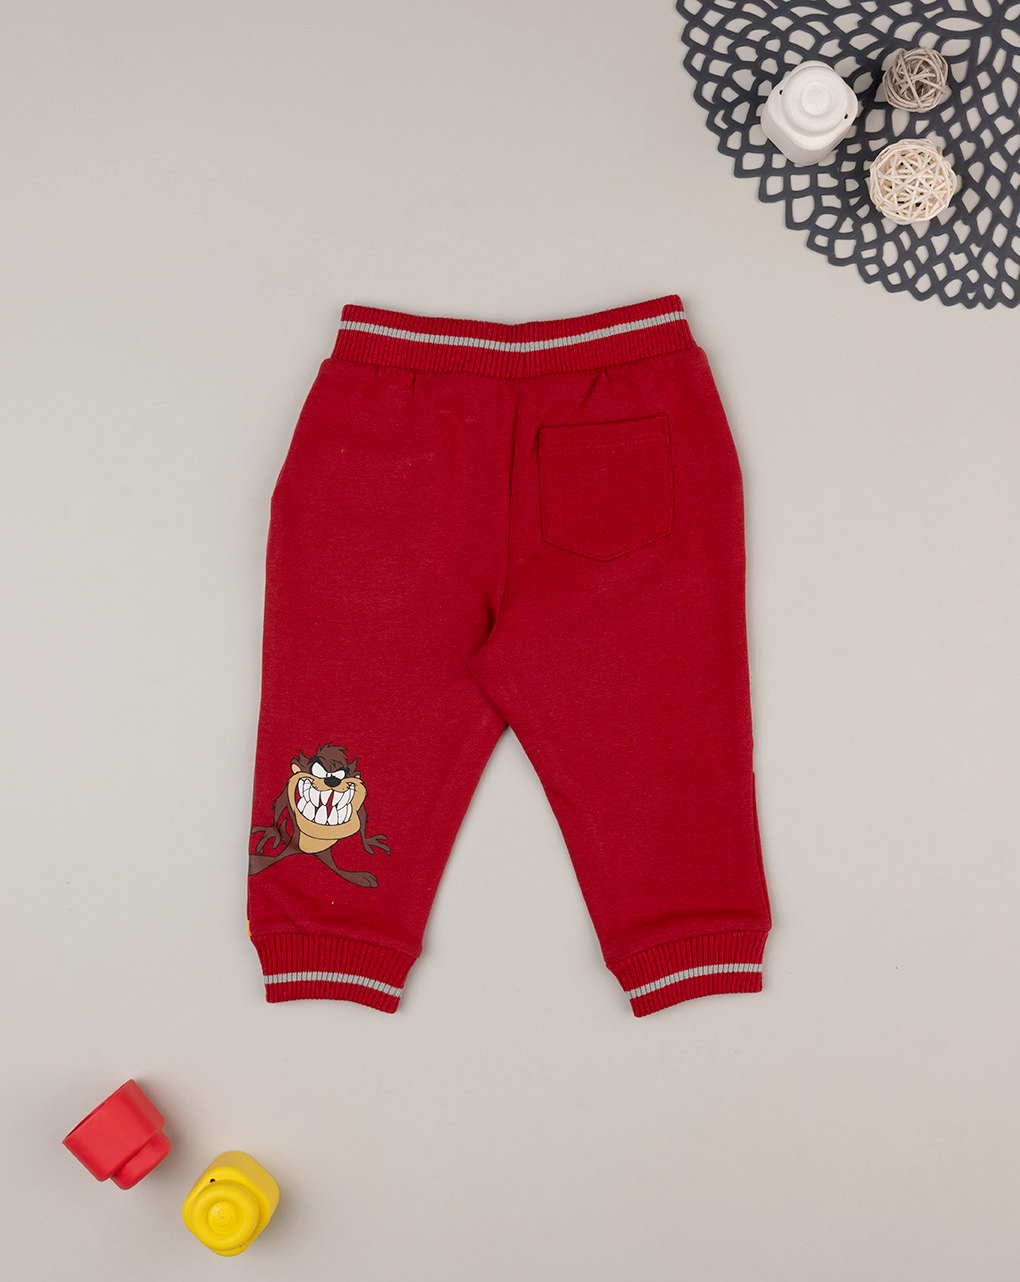 βρεφικό παντελόνι φούτερ κόκκινο με looney tunes για αγόρι - Prénatal